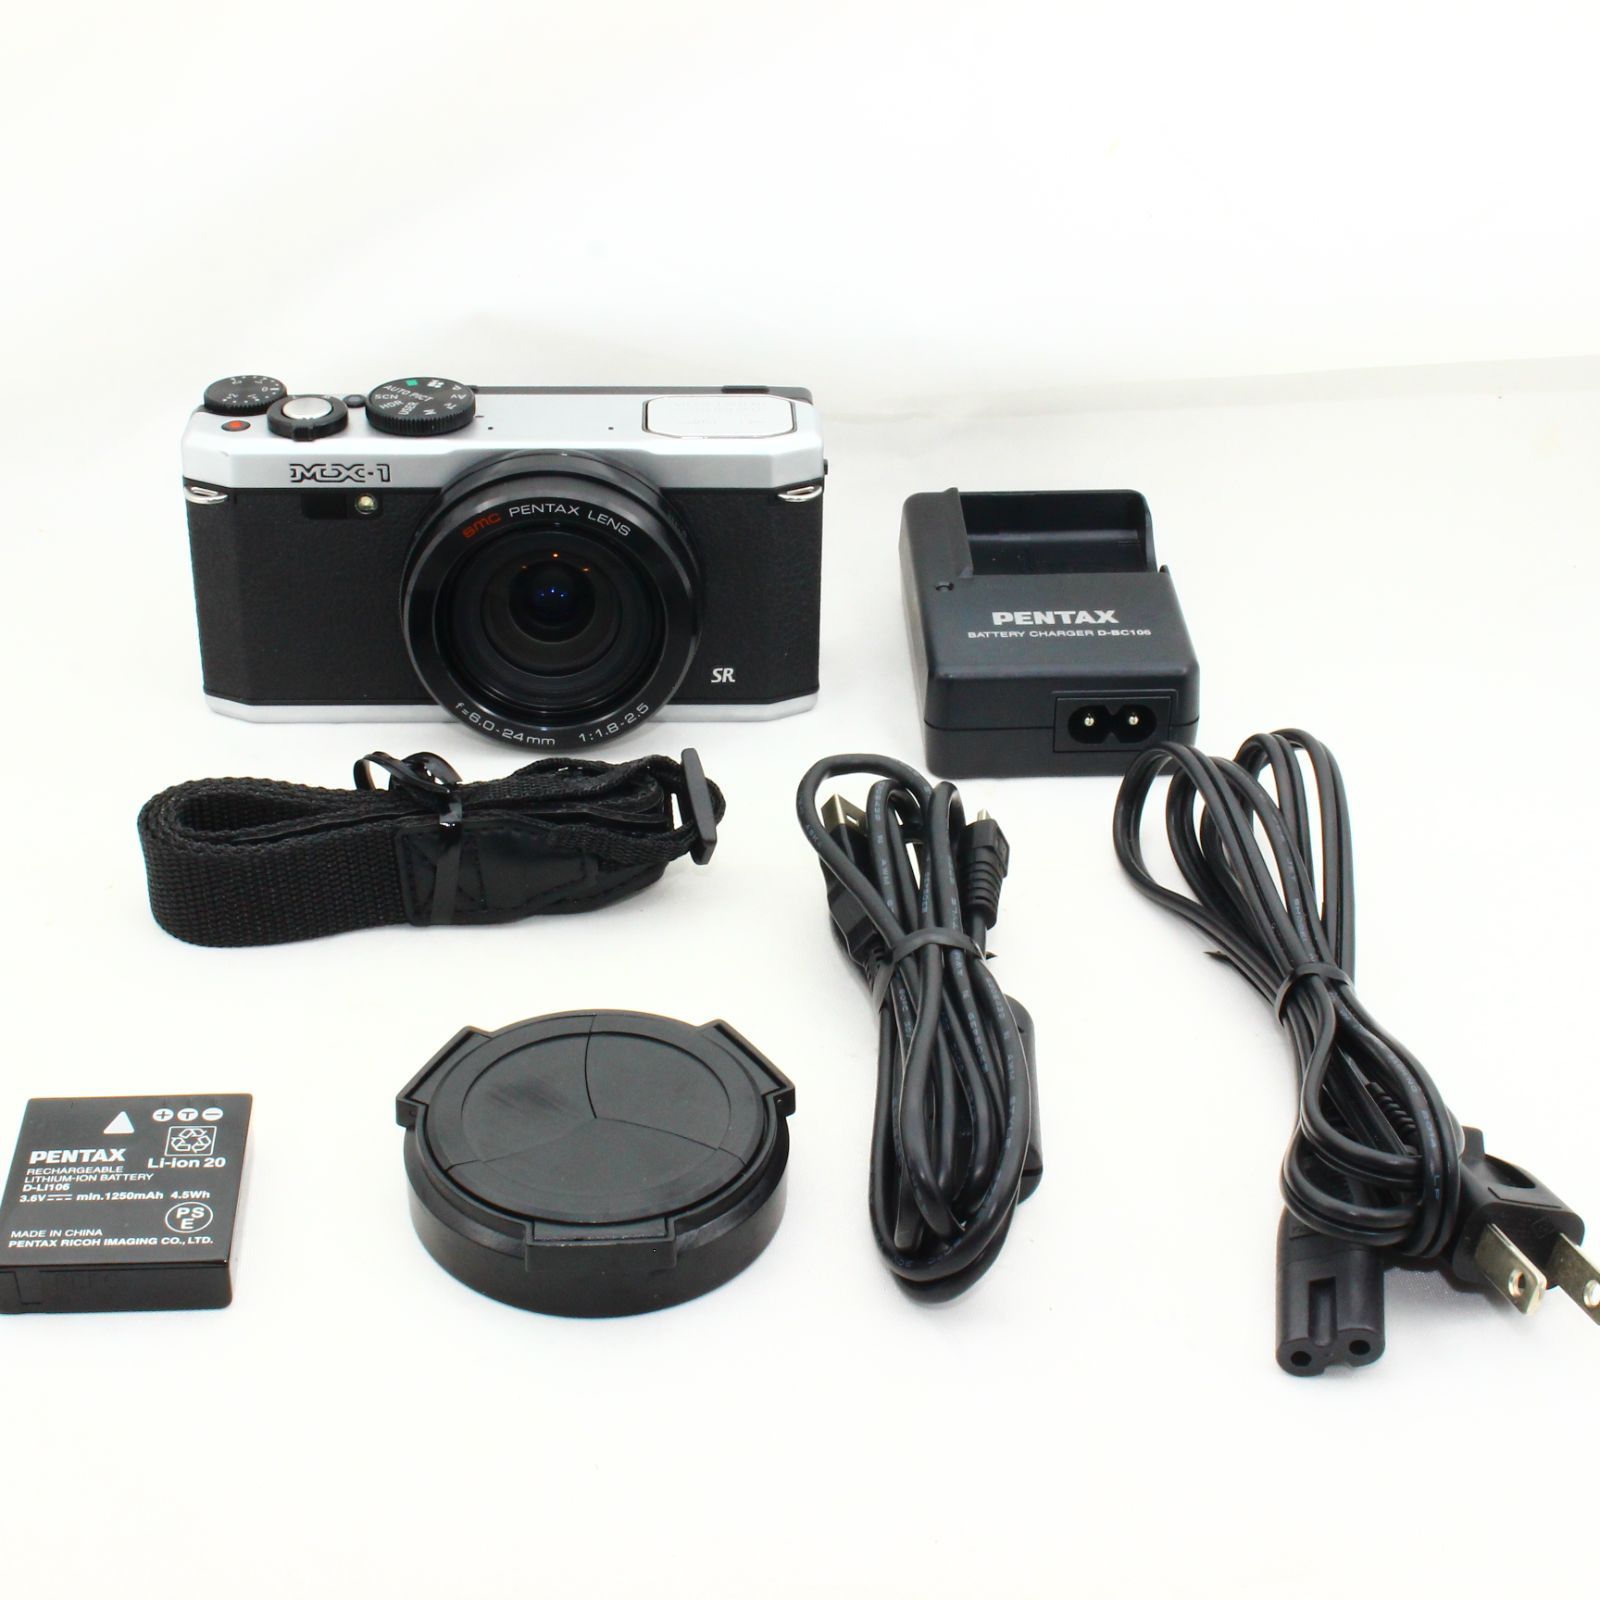 RICOH PENTAX デジタルカメラ PENTAX MX-1 クラシックシルバー - M&T